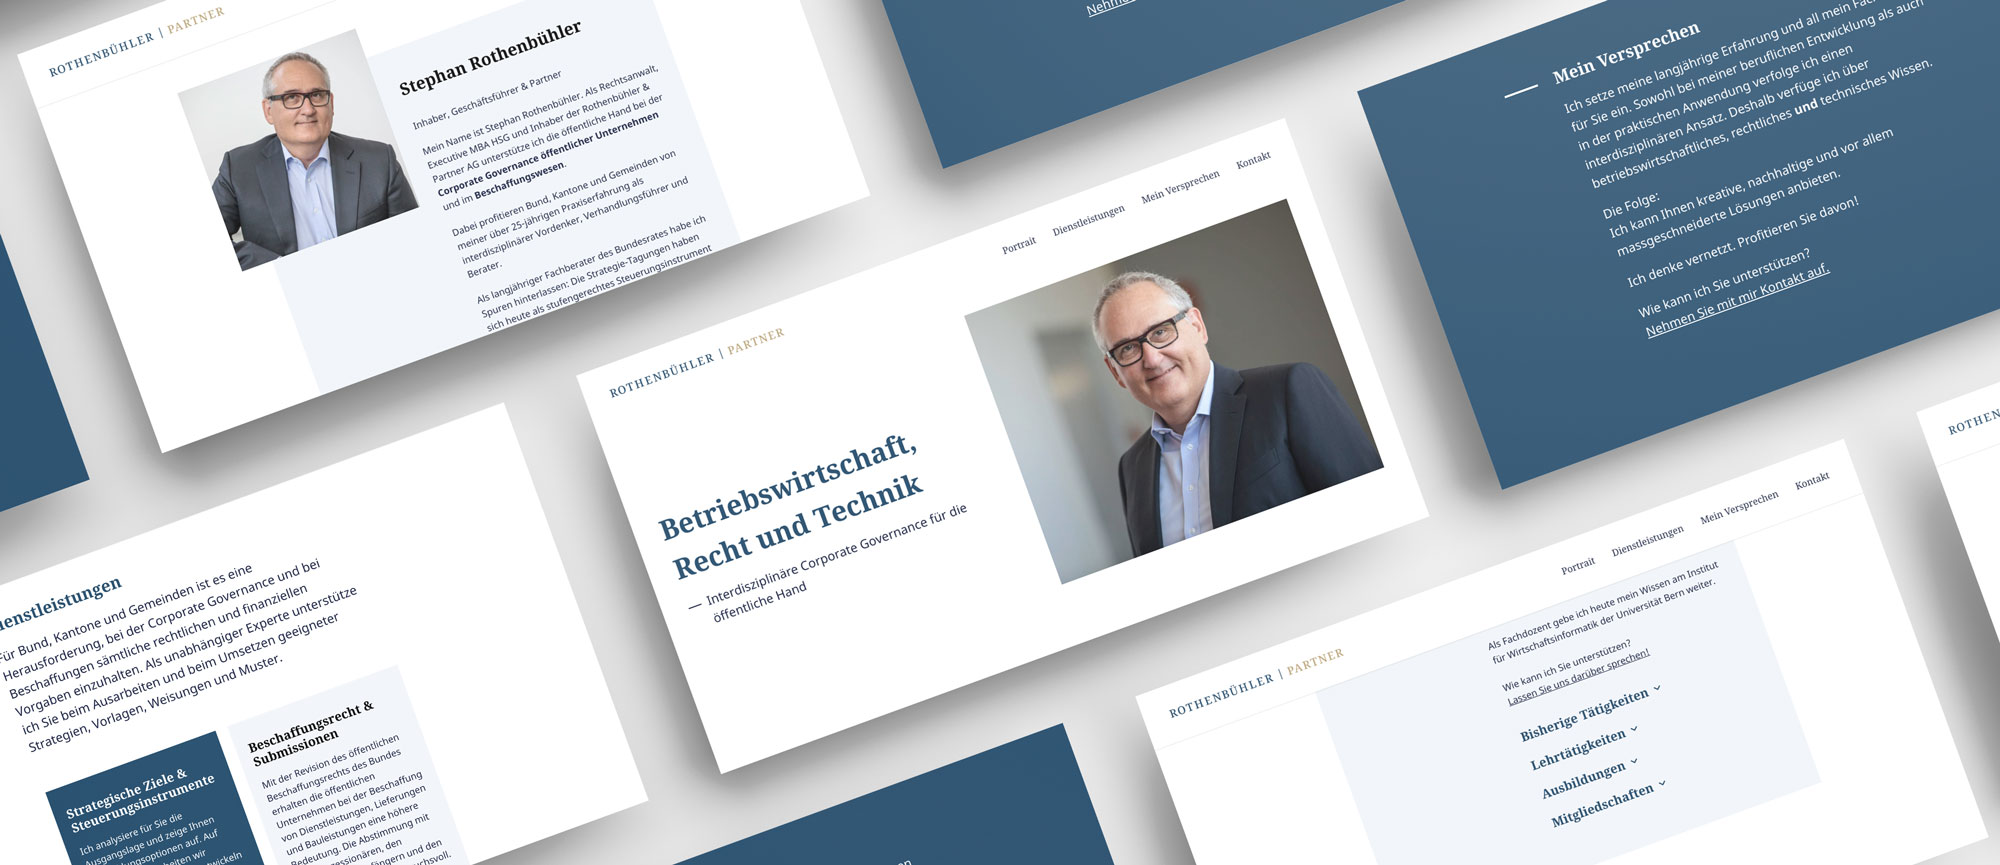 Screenshots von der neue Website der Firma Rothenbühler & Partner AG